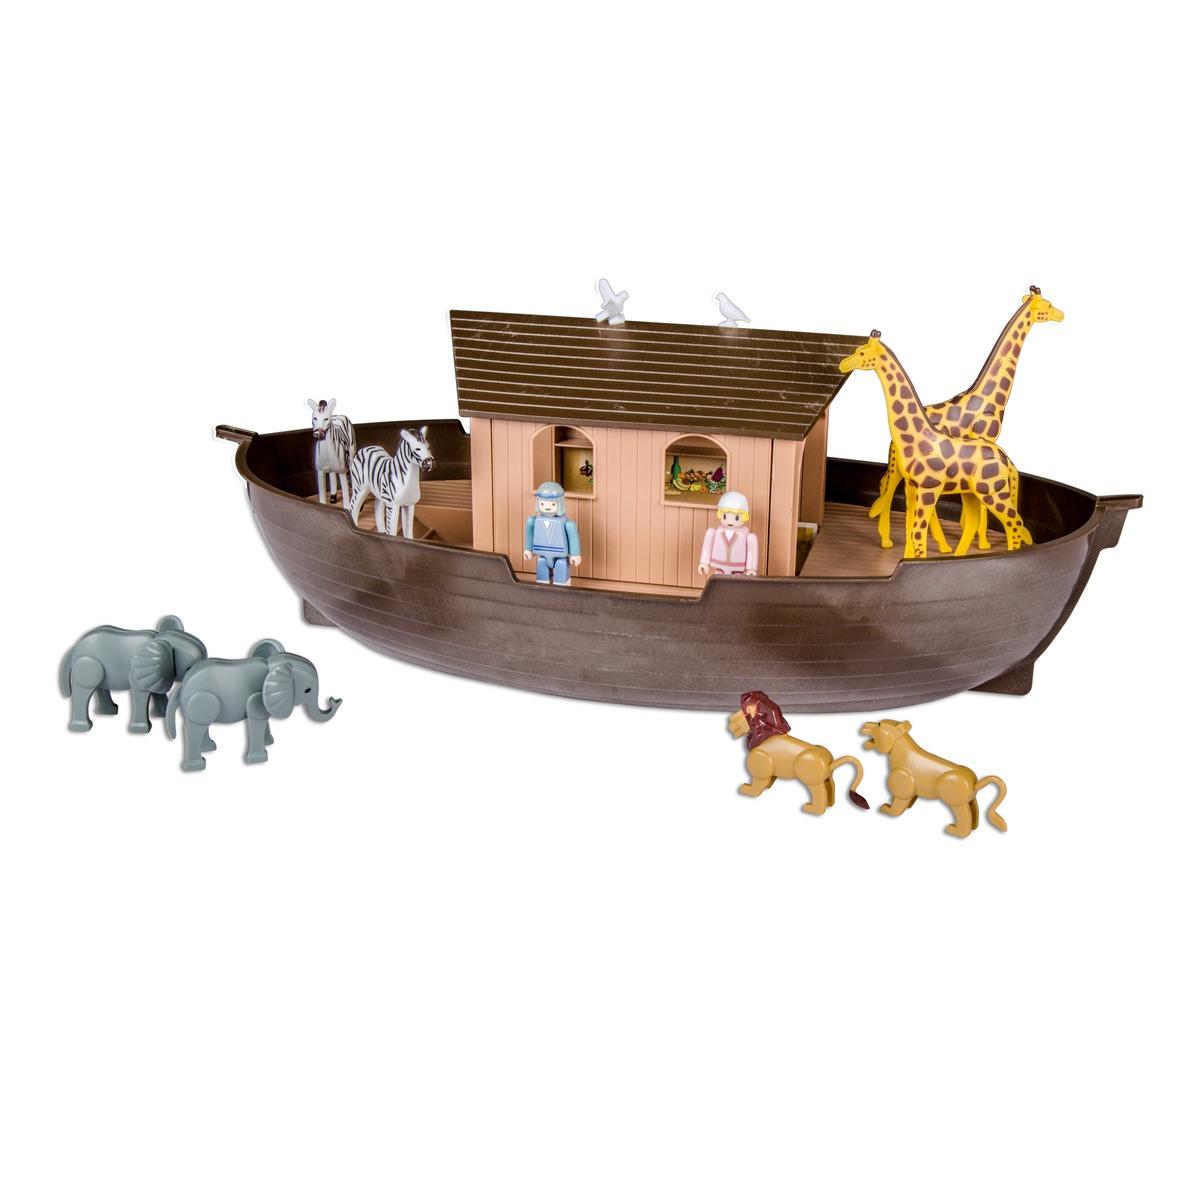 Arche de Noé et ses accessoires - 24 x 54 x 19 cm - Multicolore